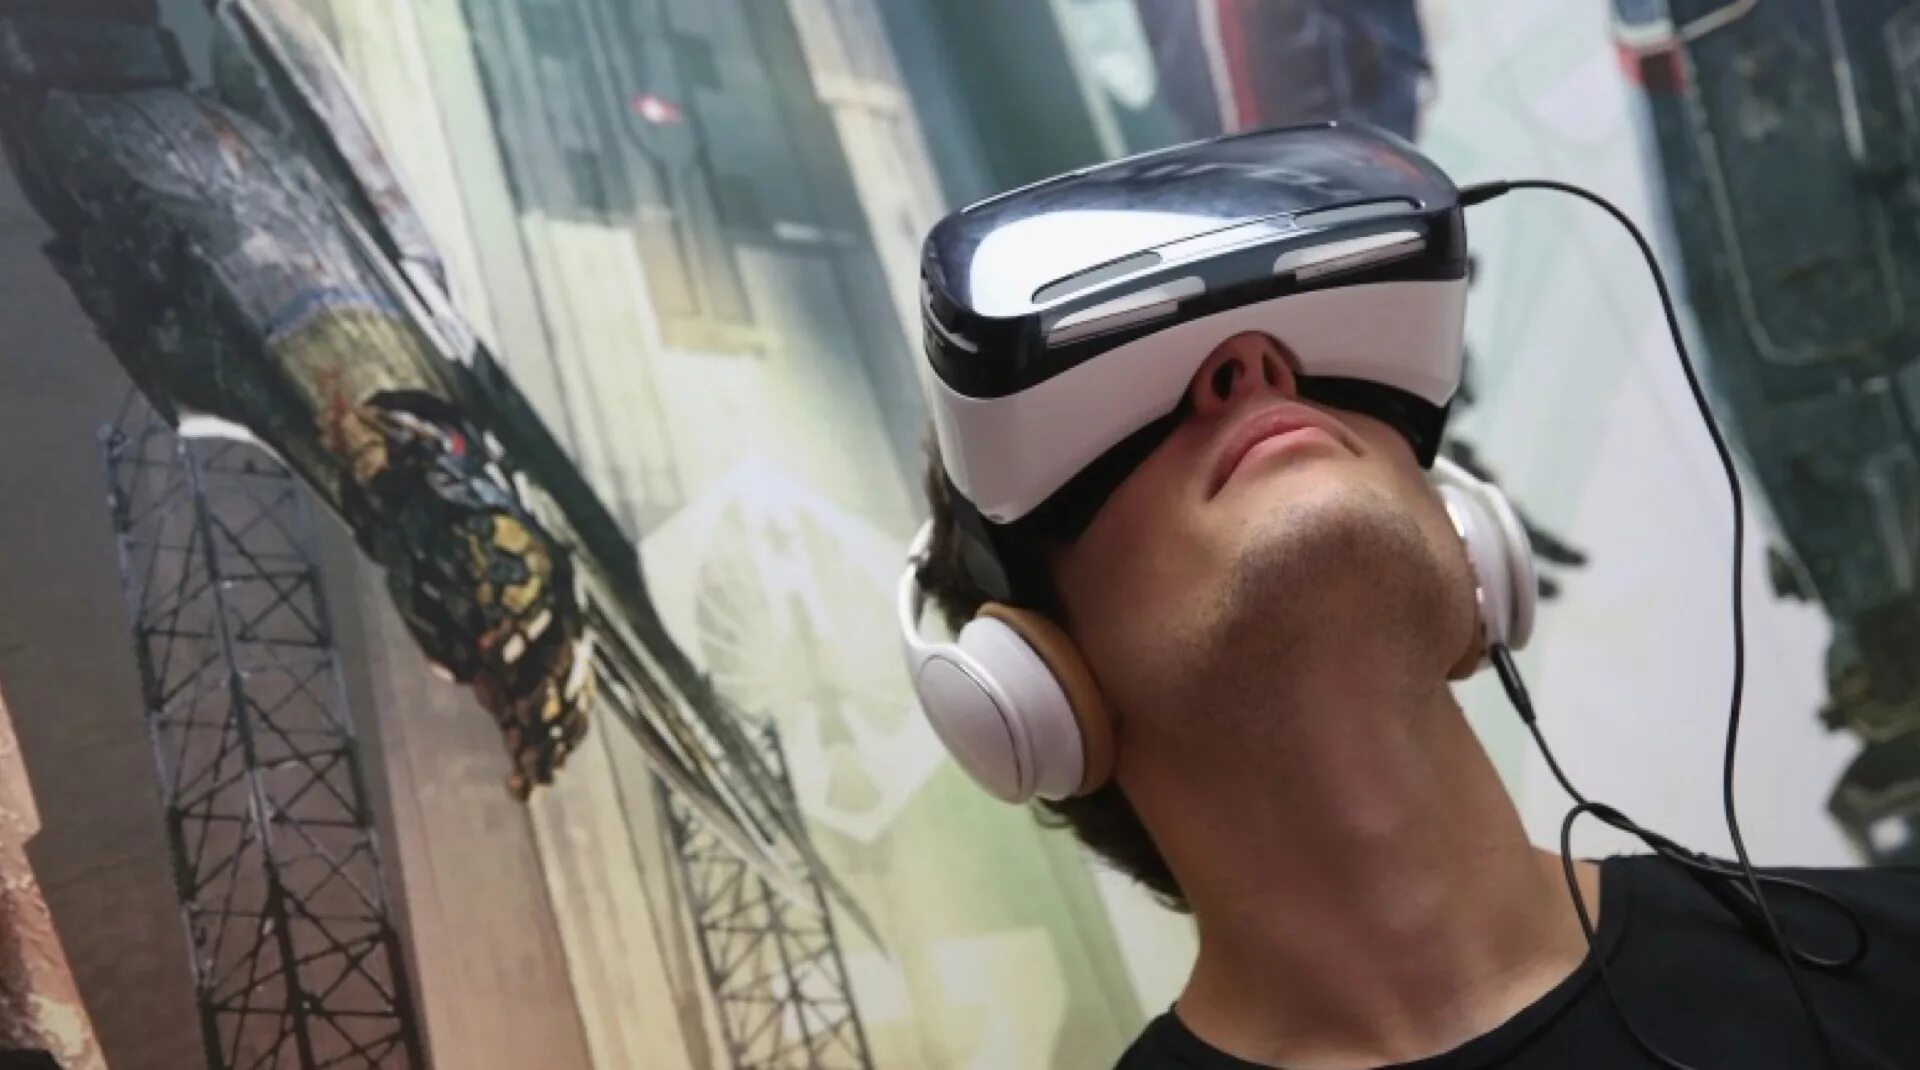 Vr последняя версия. Samsung Gear шлем. Окулус шлем виртуальной реальности. Виртуальная реальность (Virtual reality, VR). Человек в шлеме виртуальной реальности.